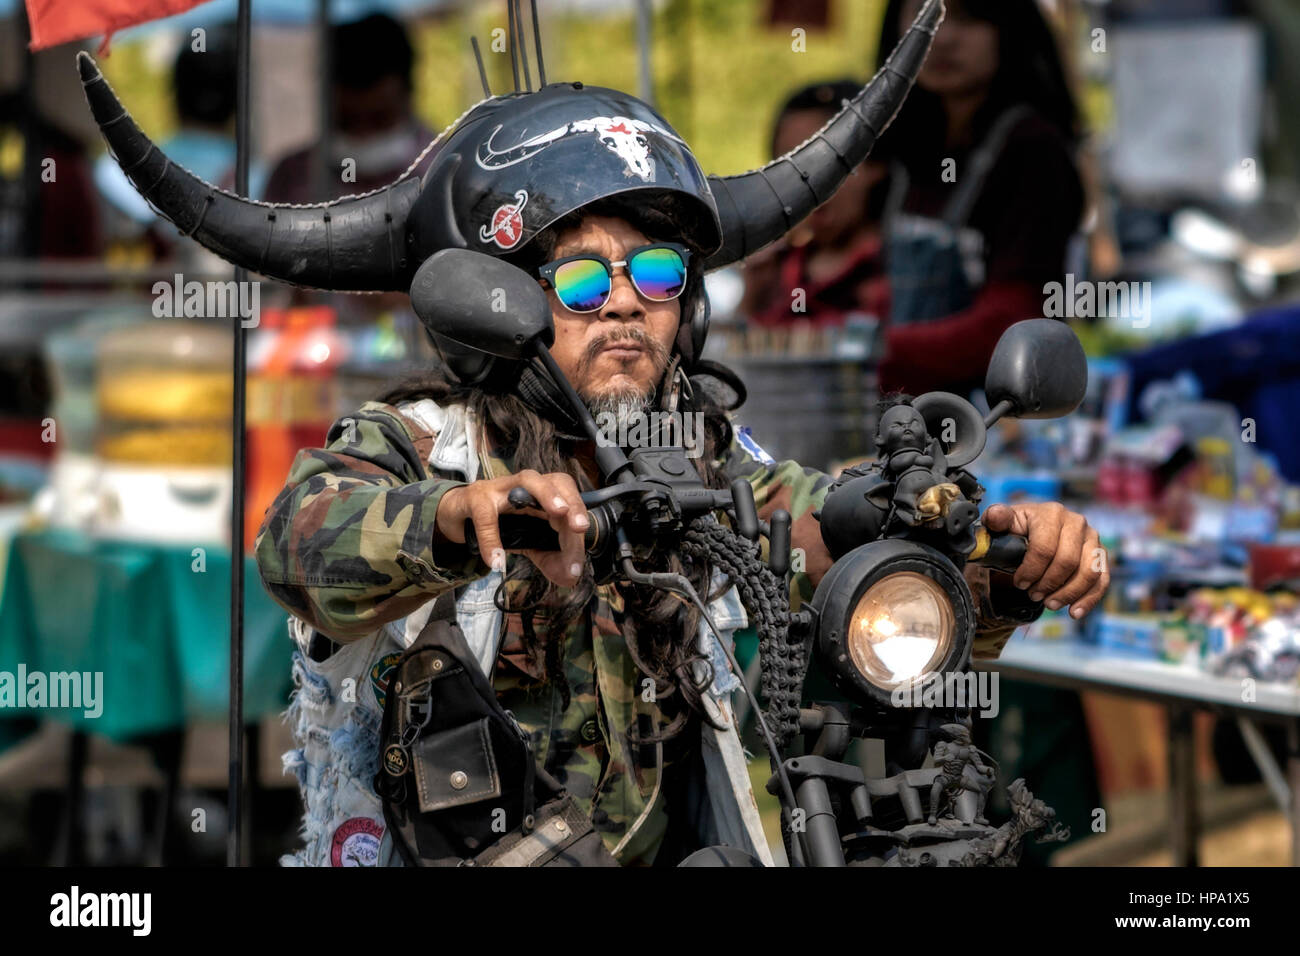 Biker in un festival motociclistico con un casco di sicurezza molto insolito e personalizzato. Thailandia persone, Sud-Est asiatico Foto Stock